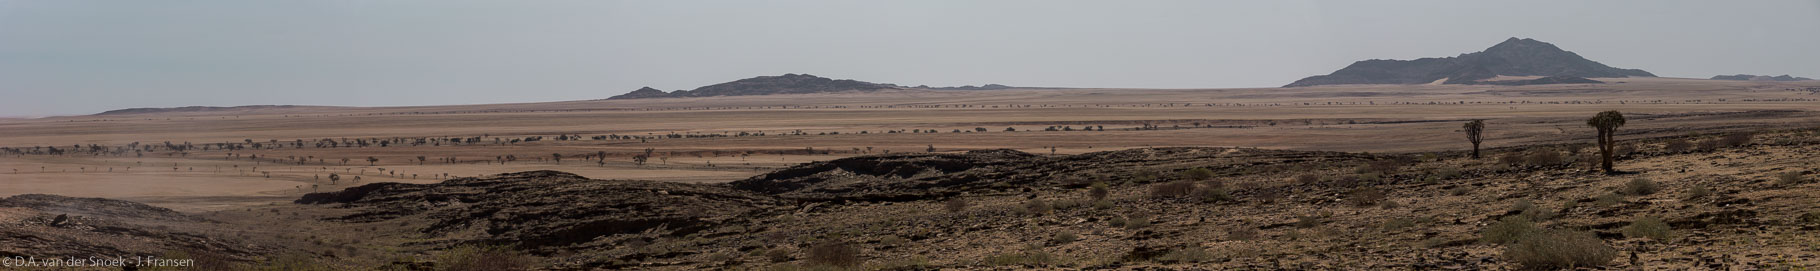 Namibië-1218-1223_v1.jpg